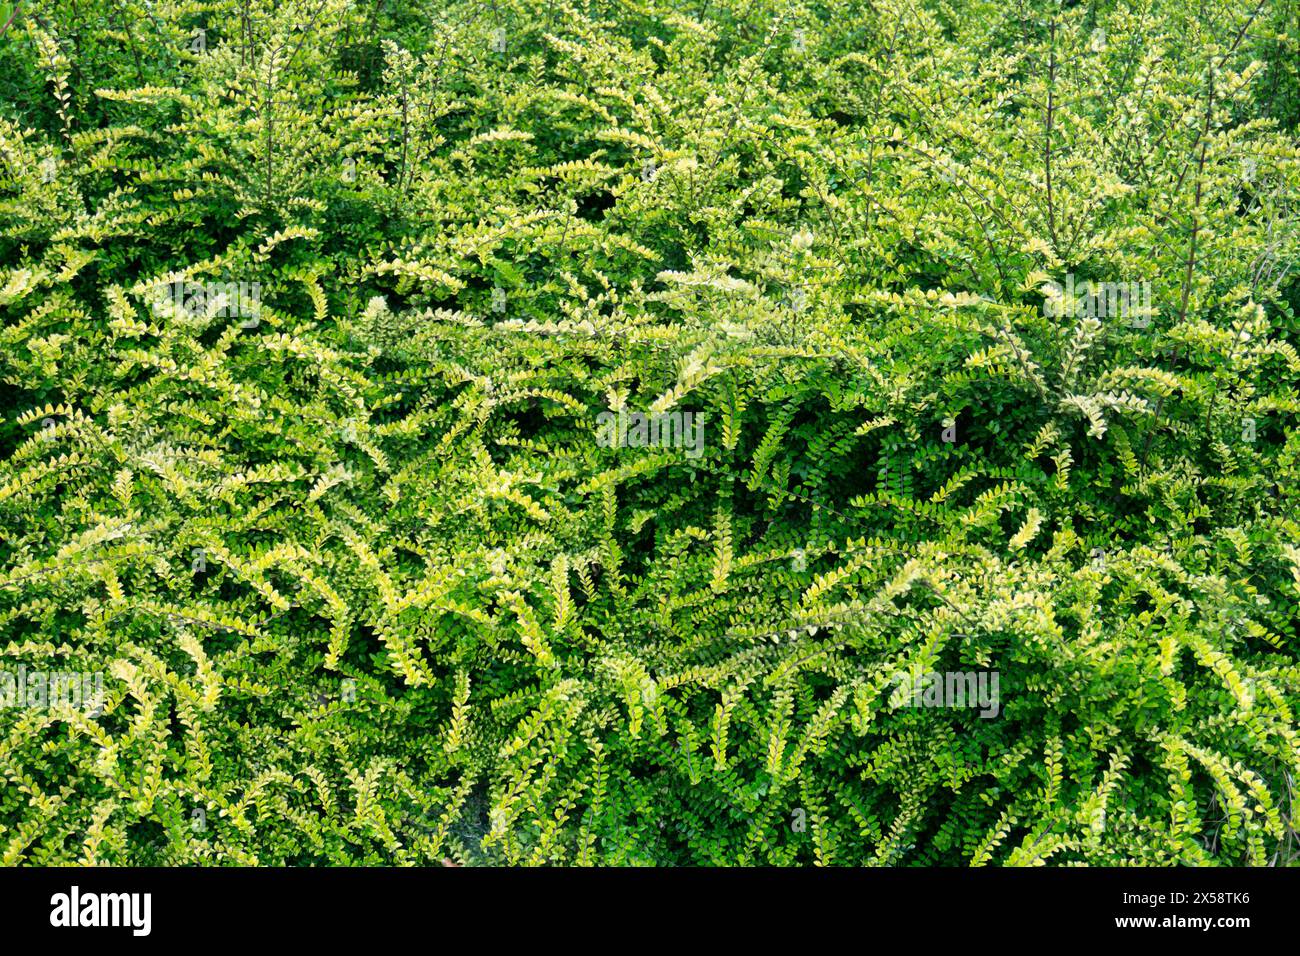 Lonicera pileata, Buschgeißblatt oder Moosgrün, Garten immergrüner Sträucher mit gepaarten, glänzenden, länglichen bis lanzenförmigen, Mittel- bis hellgrünen Blättern Stockfoto